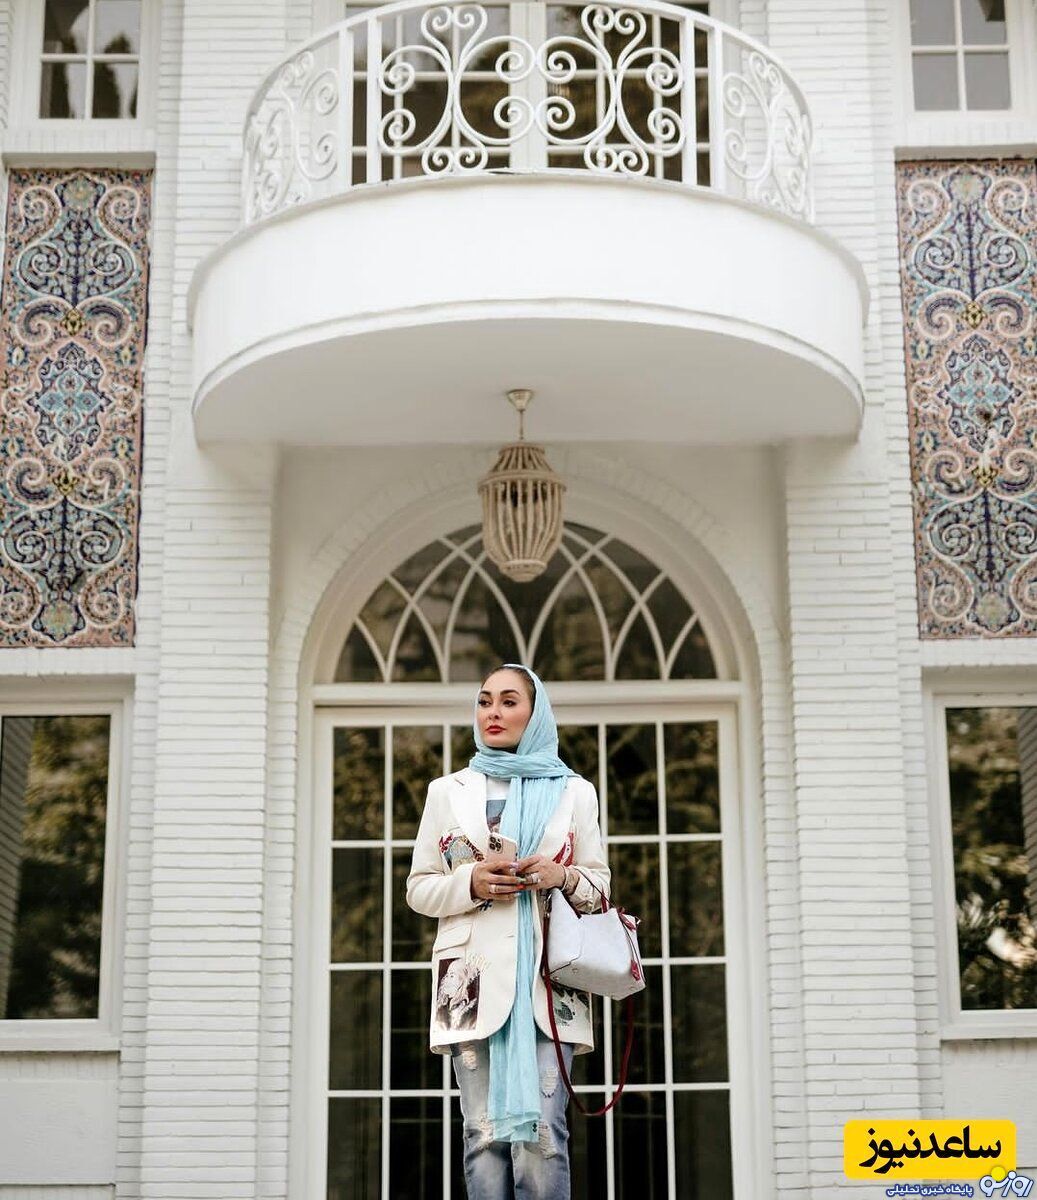 الهام حمیدی در عمارت شاهانه و لاکچری اش /عکس